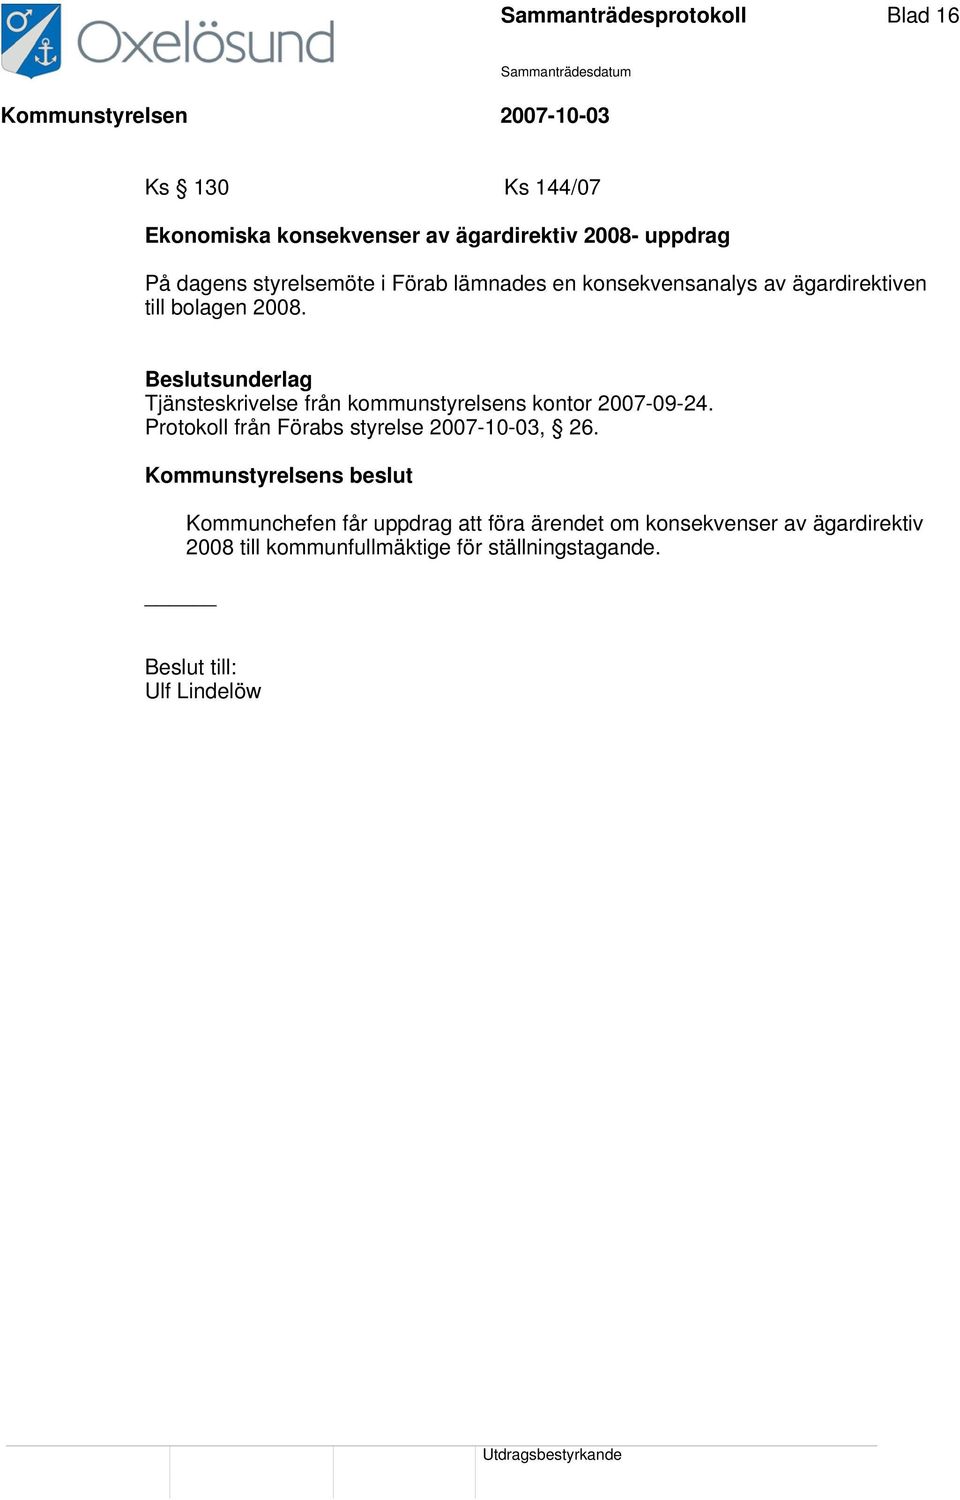 Tjänsteskrivelse från kommunstyrelsens kontor 2007-09-24. Protokoll från Förabs styrelse 2007-10-03, 26.